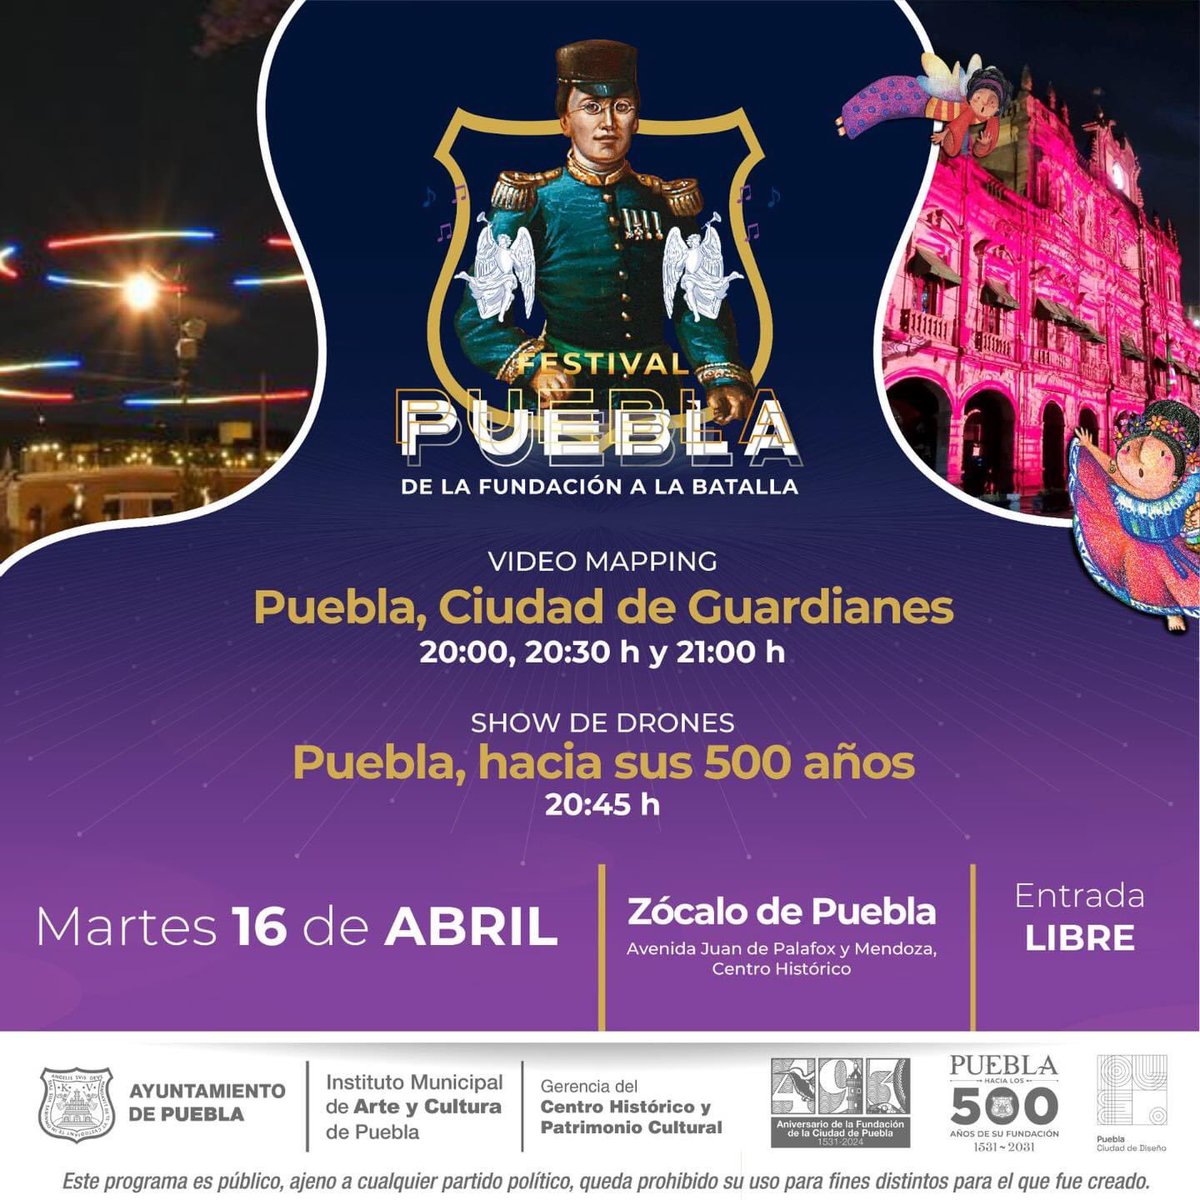 🌟 Informamos. Este martes 16 de abril Se realizará el Video mapping “Puebla, Ciudad de Guardianes” a las 20:00, 20:30 y 21:00 h. así cómo 1 show de drones a las 20:45 h. 📍Zócalo de Puebla.